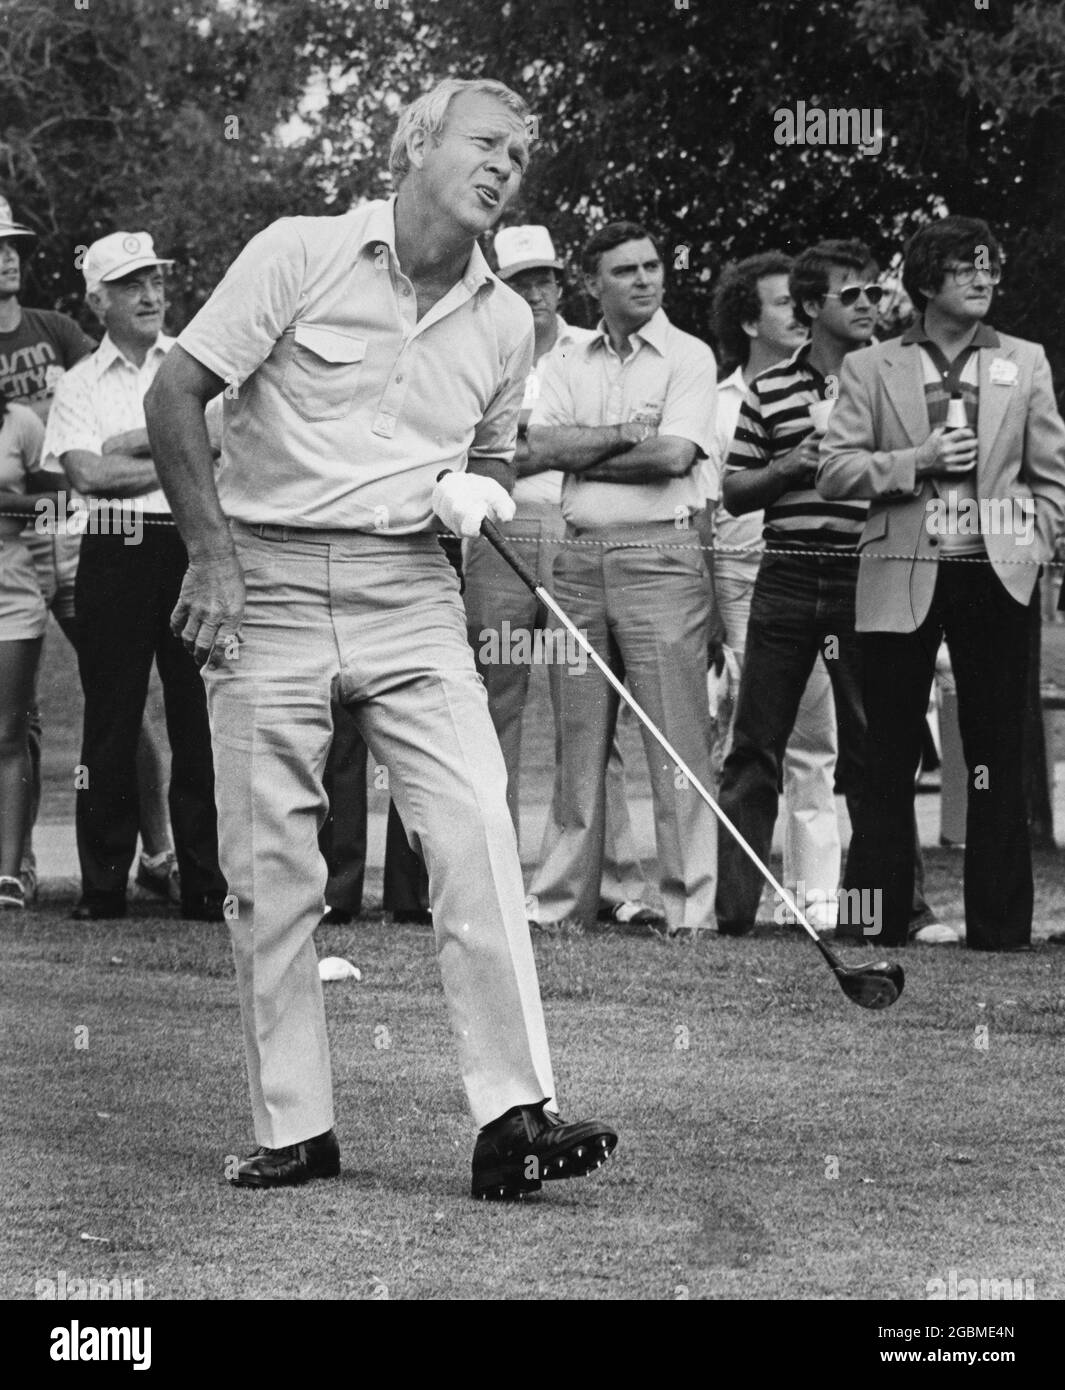 Austin Texas USA,1986: Golfista profesional Arnold Palmer compitiendo en el torneo Legends of Golf para jugadores de 50 años o más en el Onion Creek Country Club. ©Bob Daemmrich Foto de stock